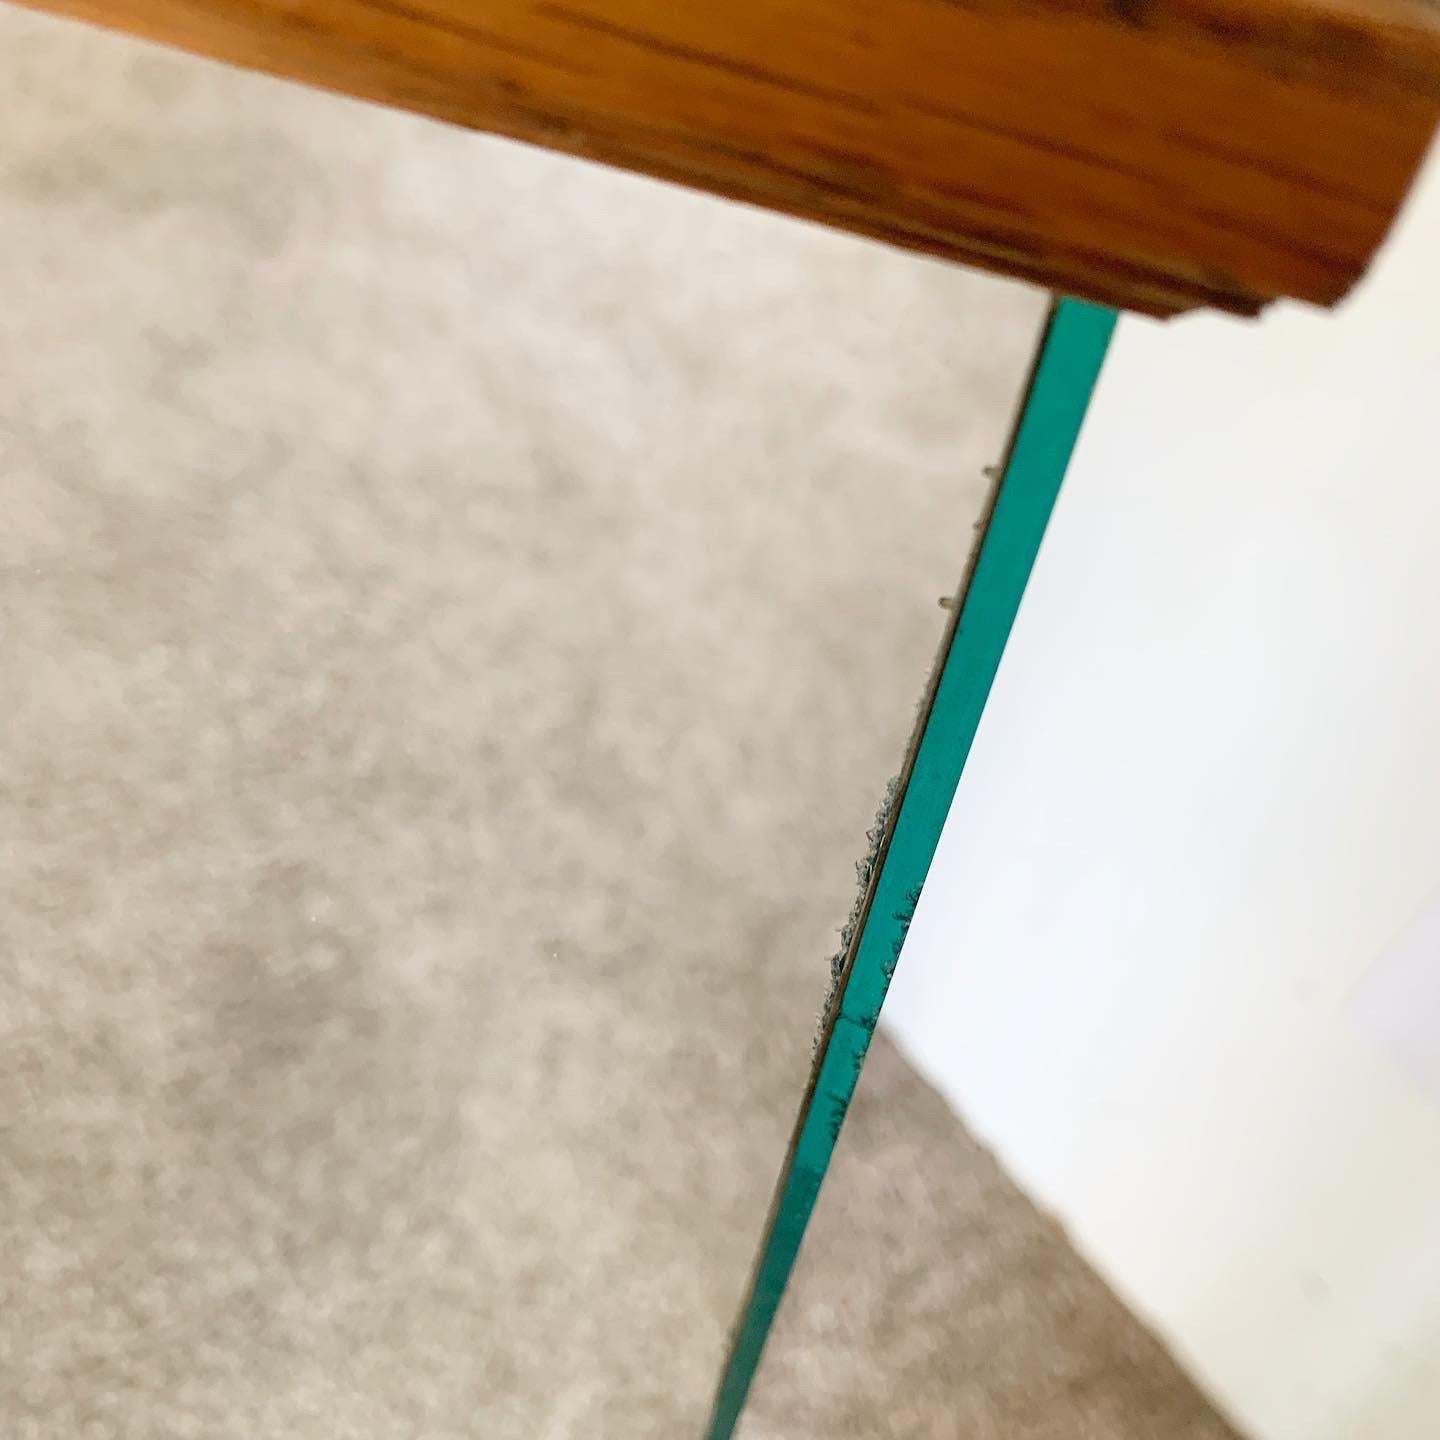 Verschönern Sie Ihre Einrichtung mit den Postmodern Rectangular Prism Pedestal Side Tables - ein Paar, das geometrisches Design und Holzverkleidung vereint.

Einzigartige rechteckige Prismenform mit geschmackvoller Holzverzierung.
Ideal zum